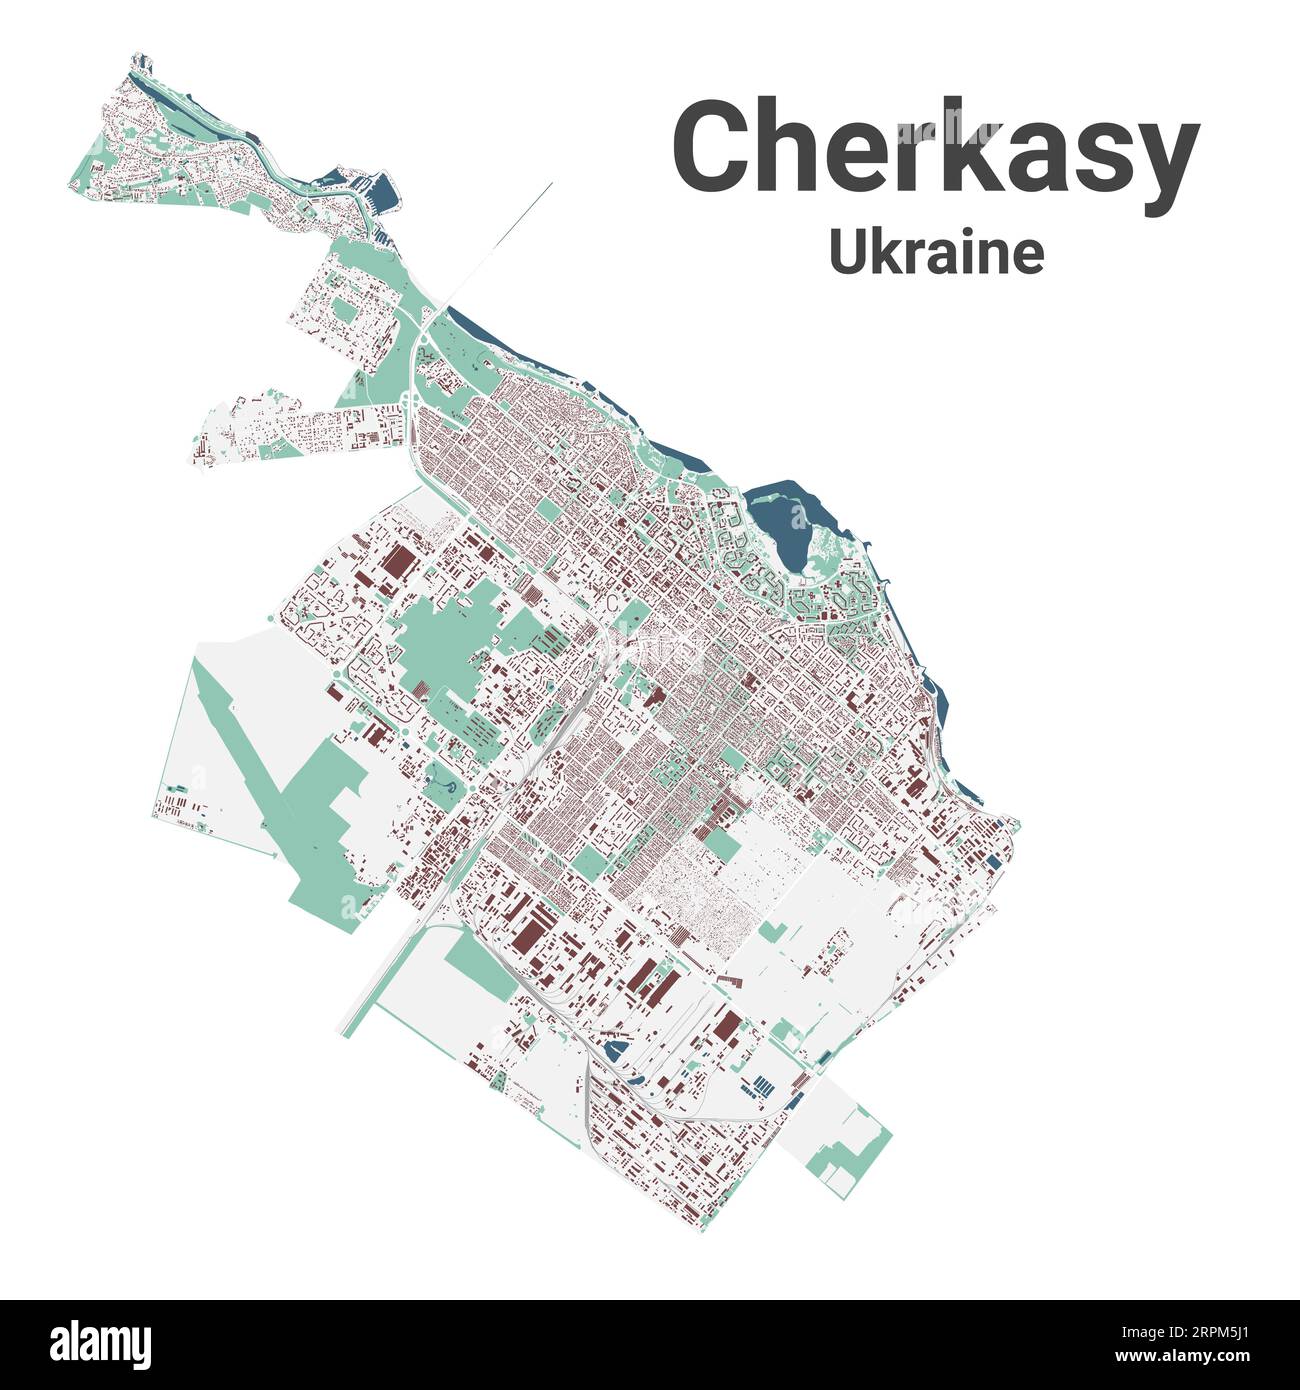 Tscherkasische Karte, Stadt in der Ukraine. Stadtplan mit Gebäuden, Flüssen und Straßen, Parks und Eisenbahnen. Vektorillustration. Stock Vektor